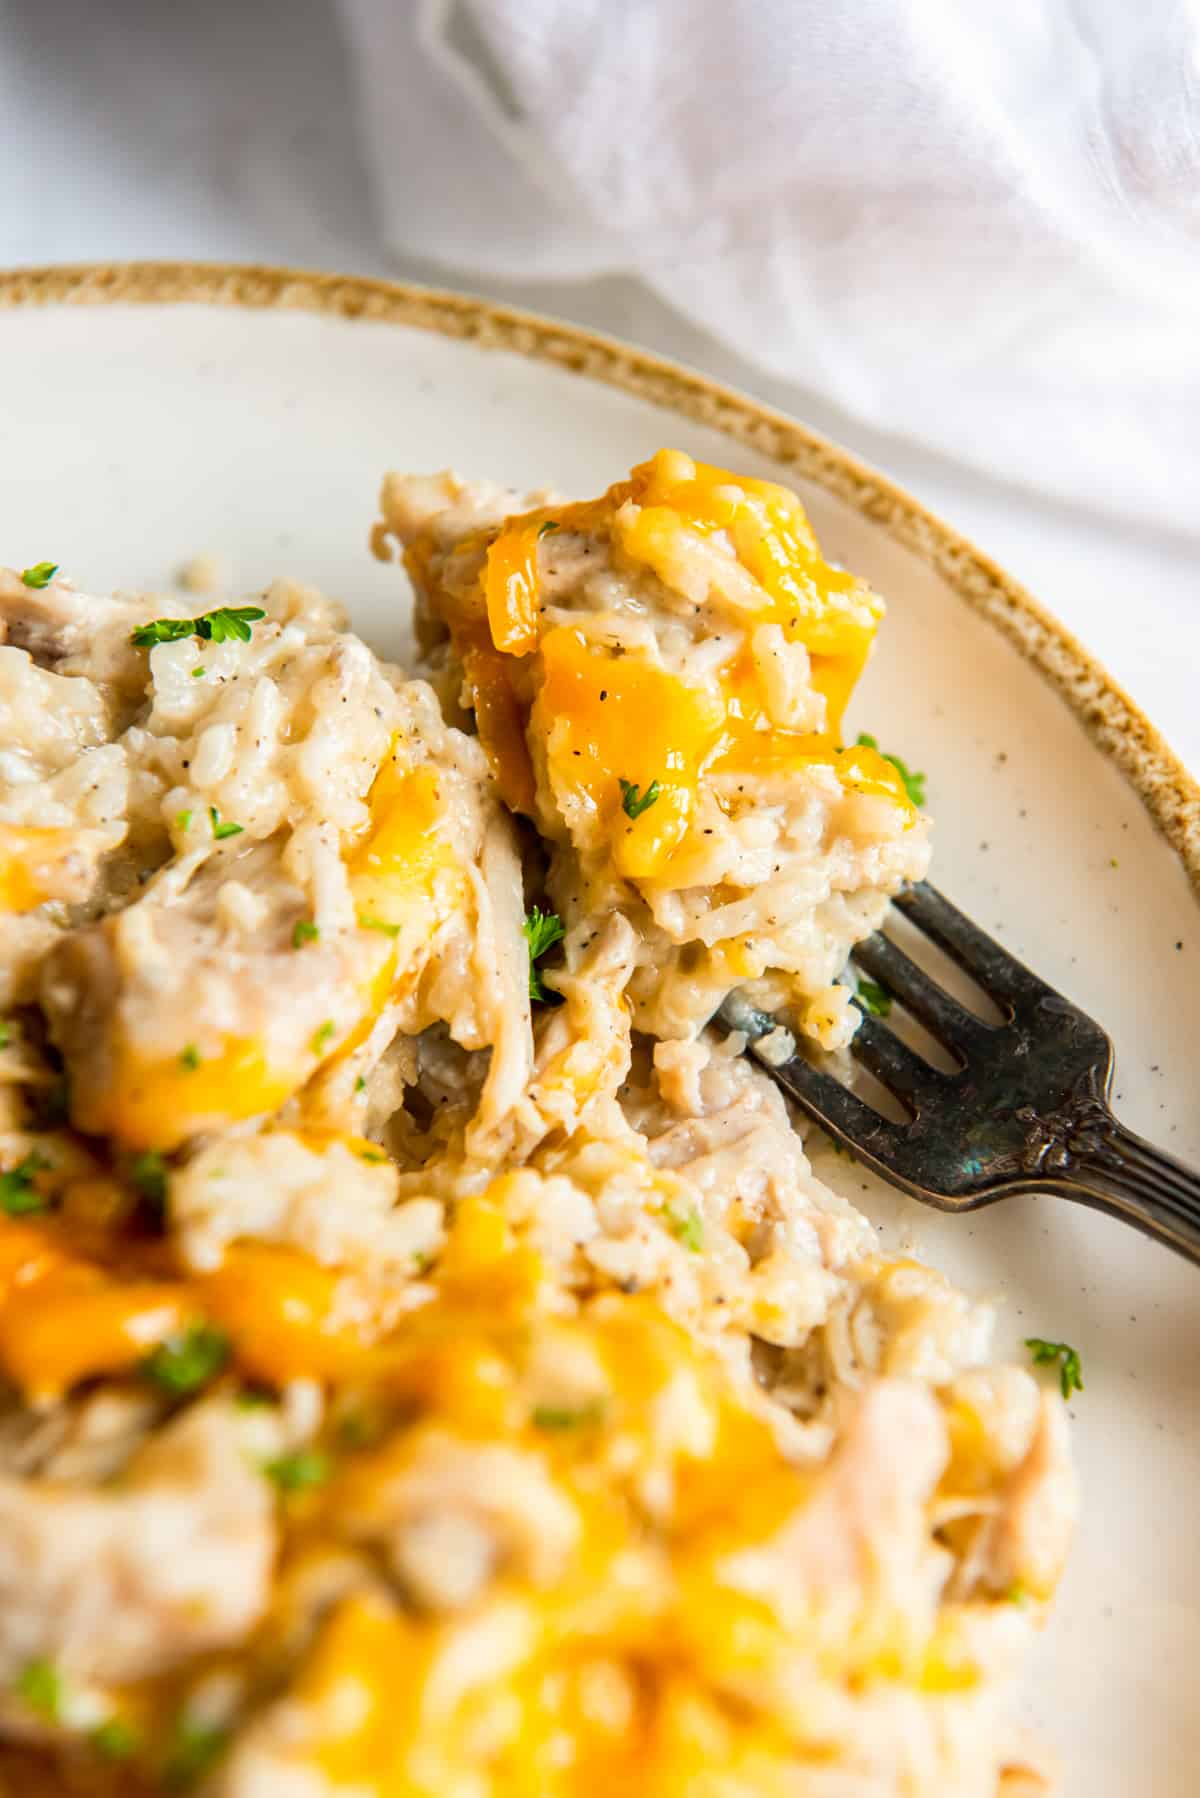 närbild av ccrockpot kyckling och ris på en vit platta med en gaffel.